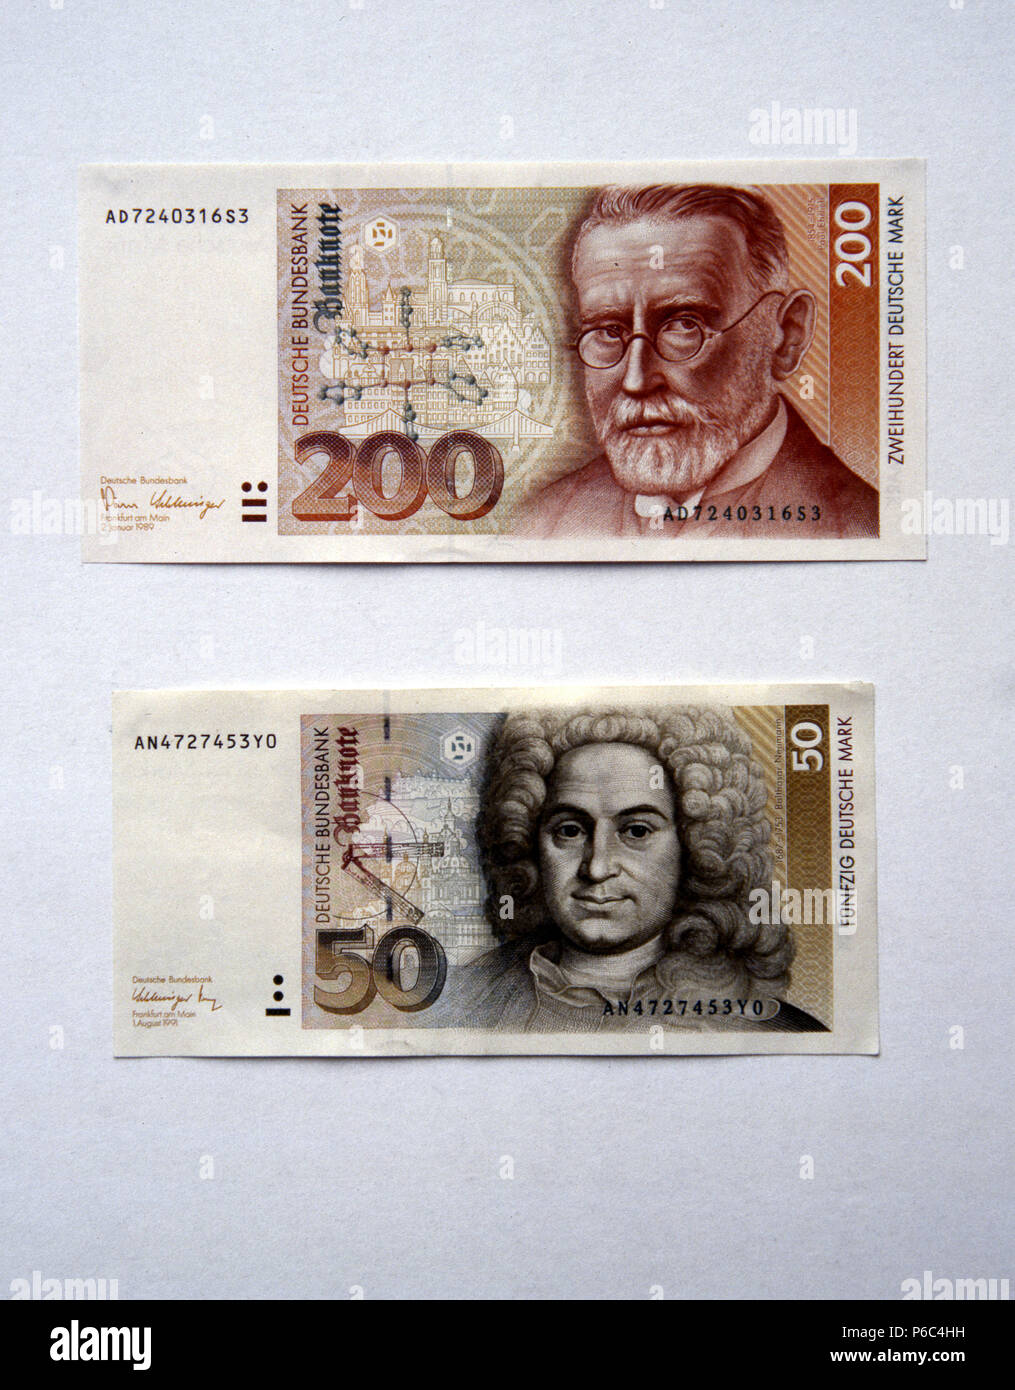 Berlino, Germania - banconote del valore di 50 DM e 200 DM Foto Stock